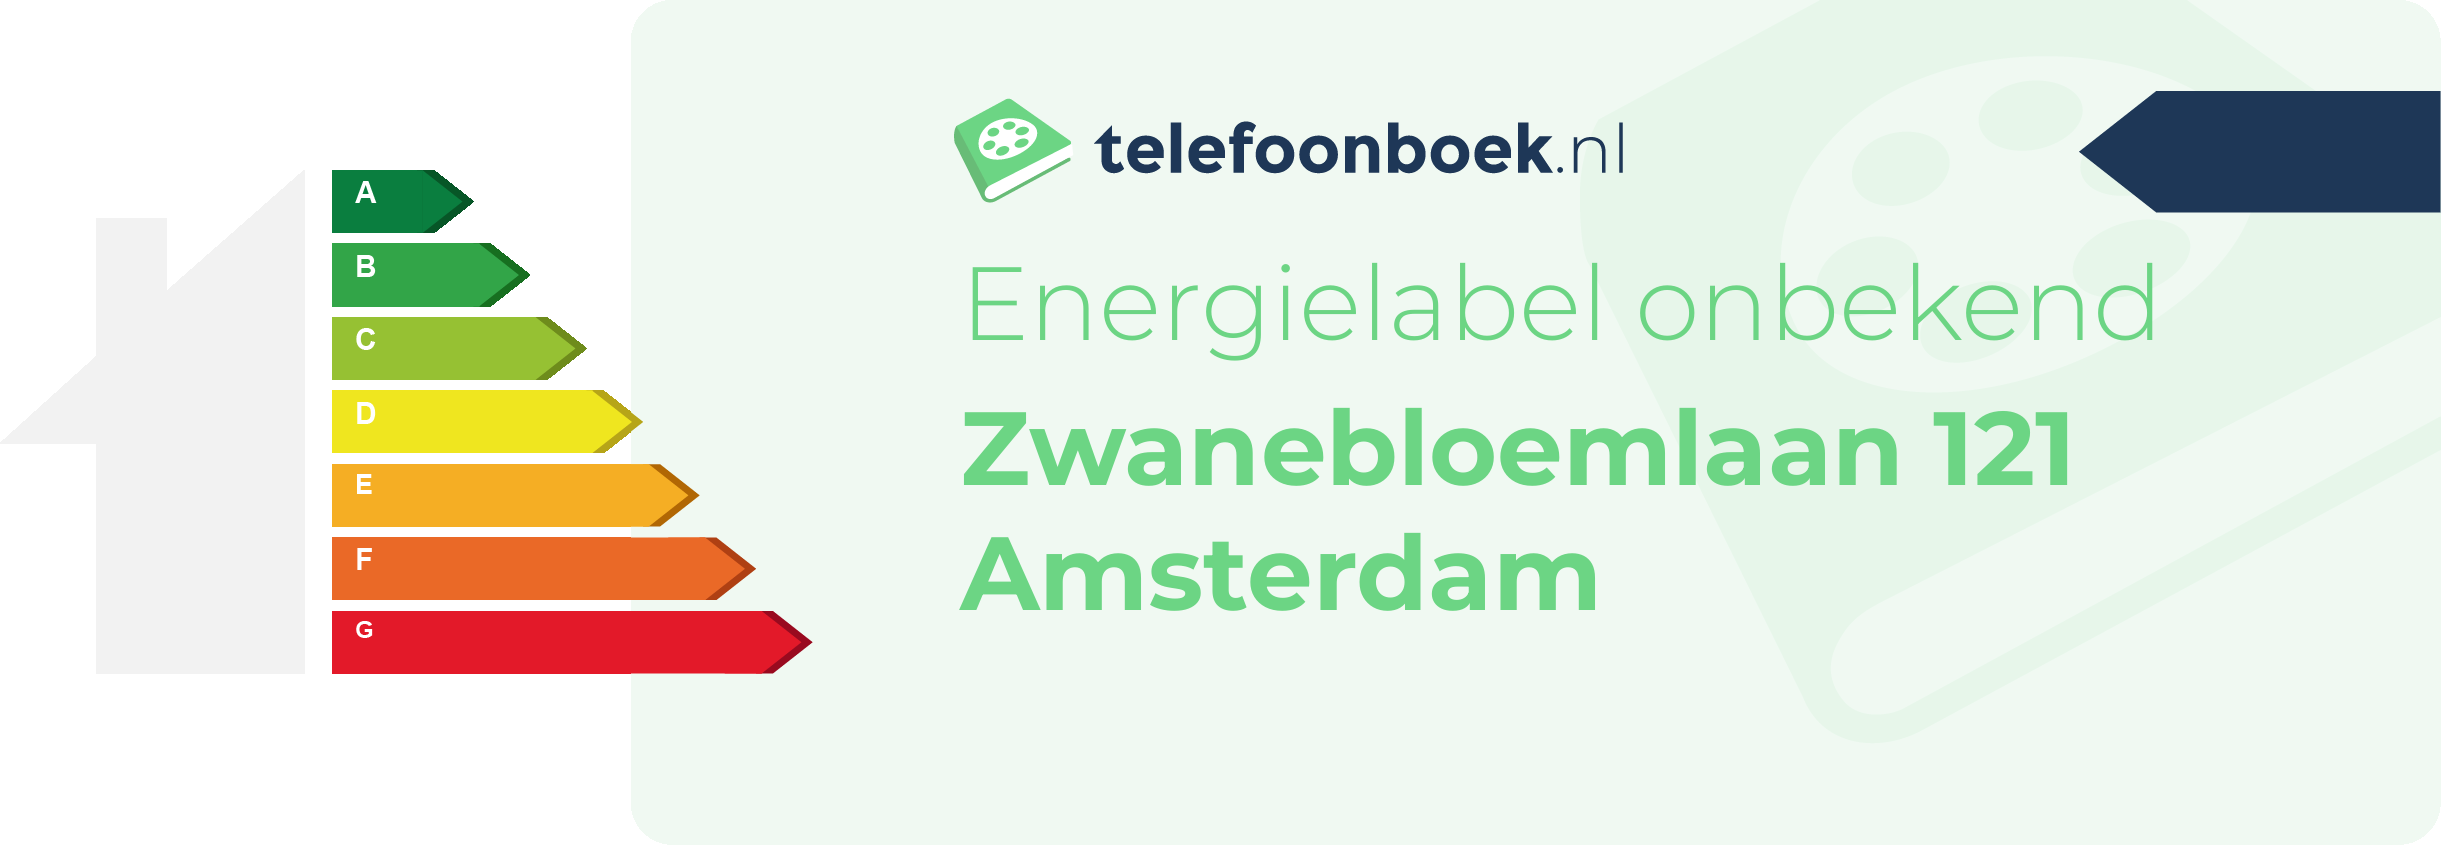 Energielabel Zwanebloemlaan 121 Amsterdam